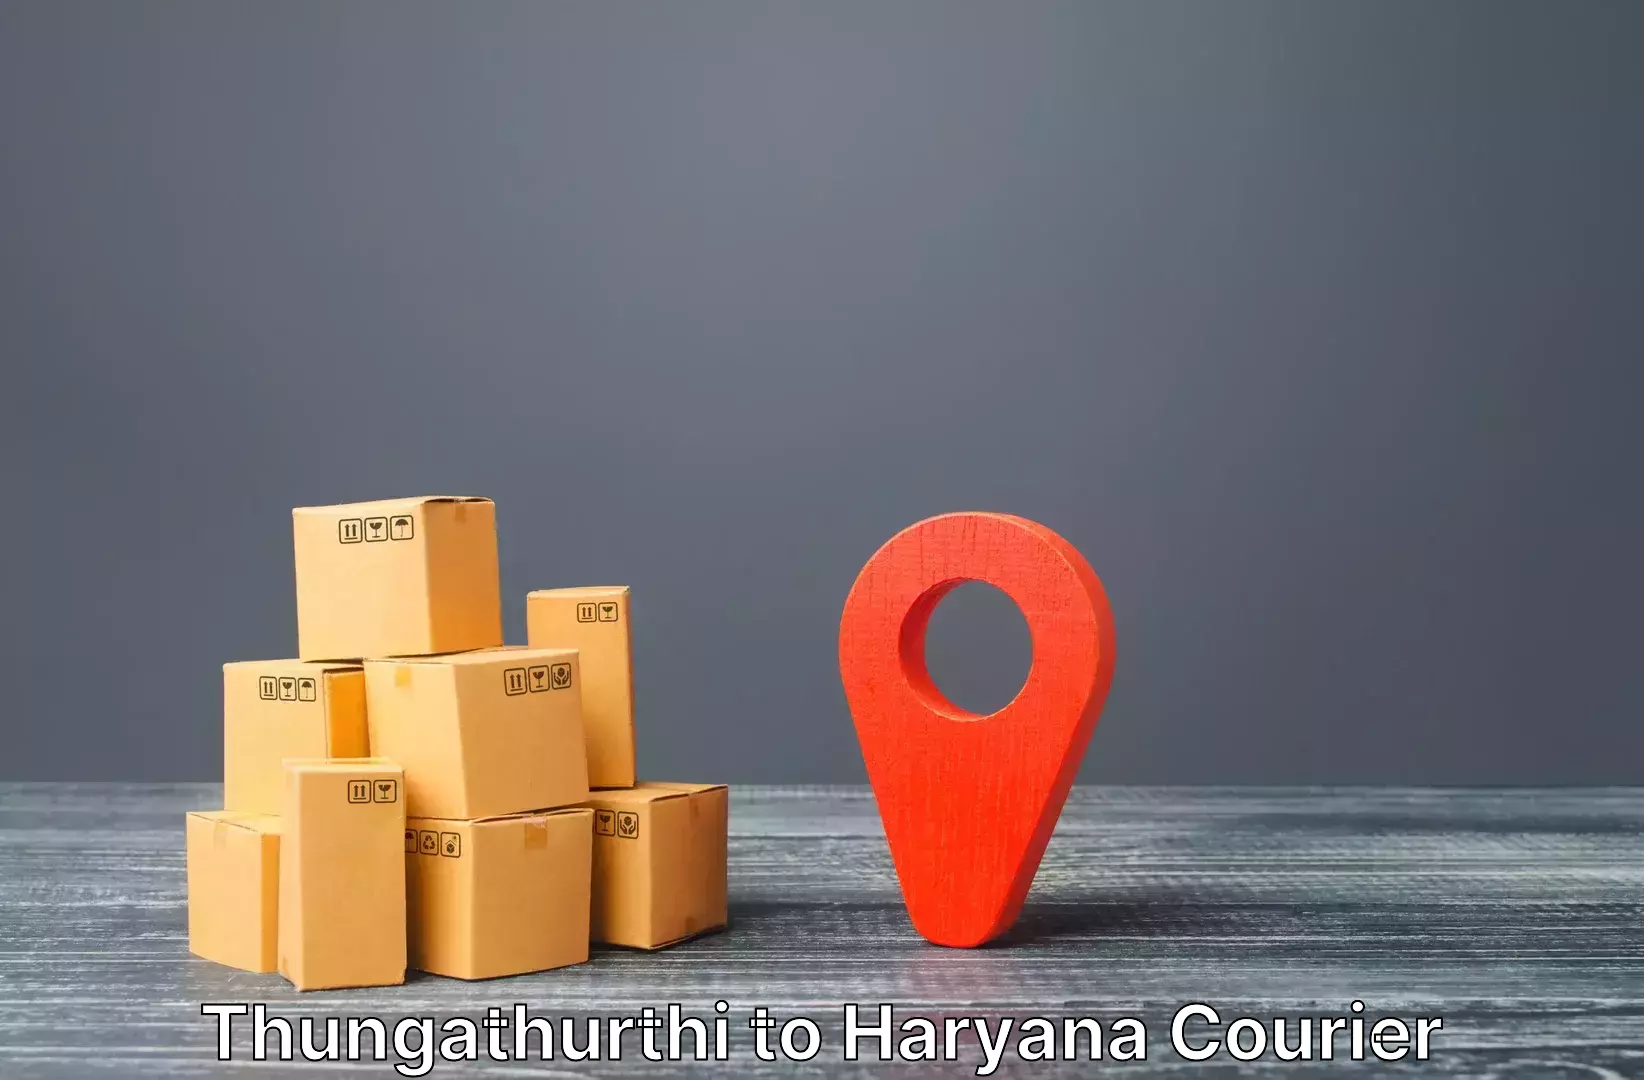 Luggage transit service Thungathurthi to Haryana